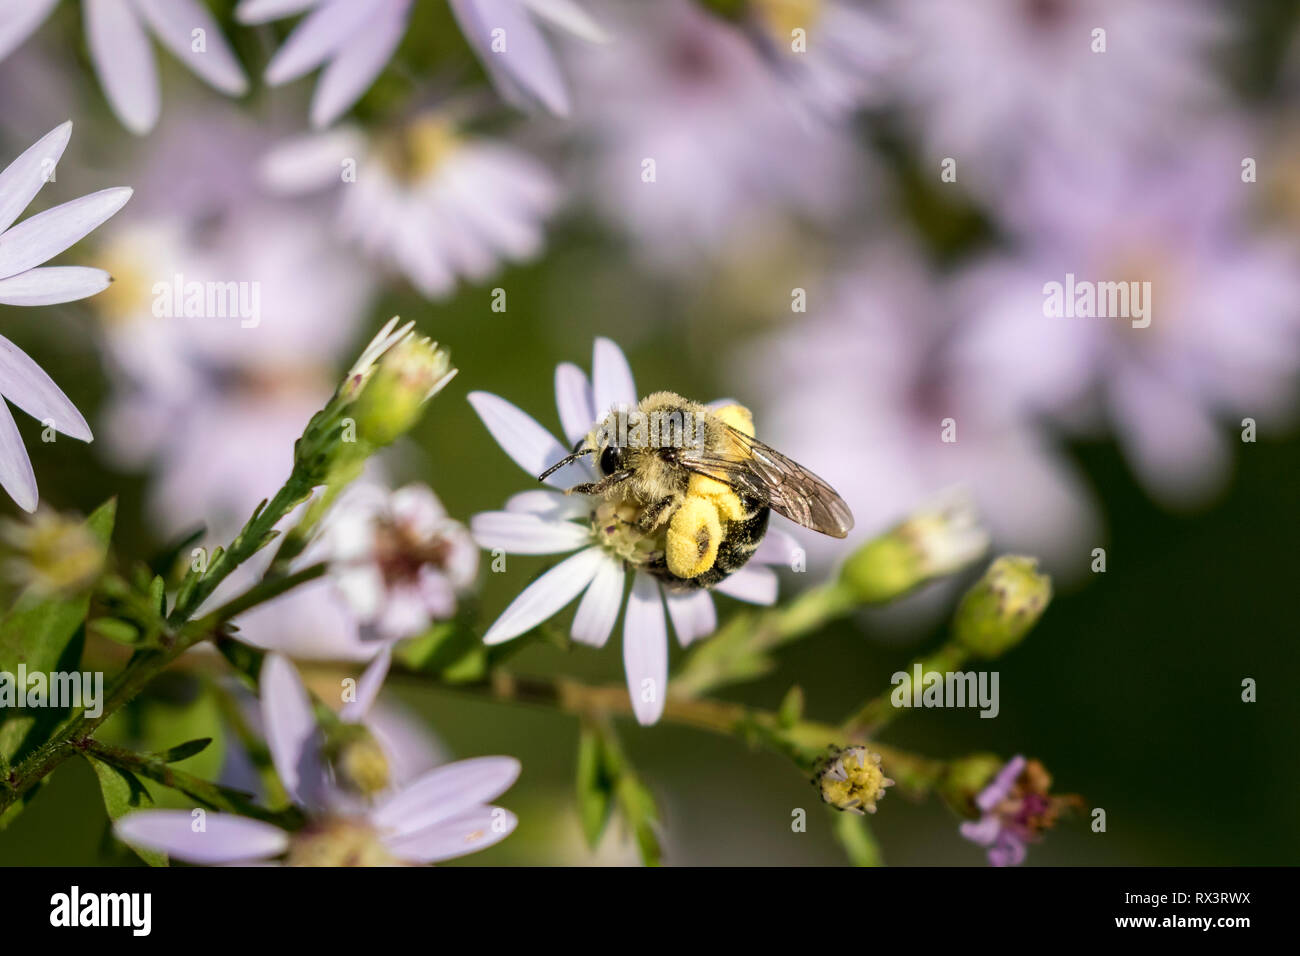 Desigualdad de celofán (abeja Colletes inaequalis) con el polen en sus patas traseras, Toronto, Ontario, Canadá Foto de stock